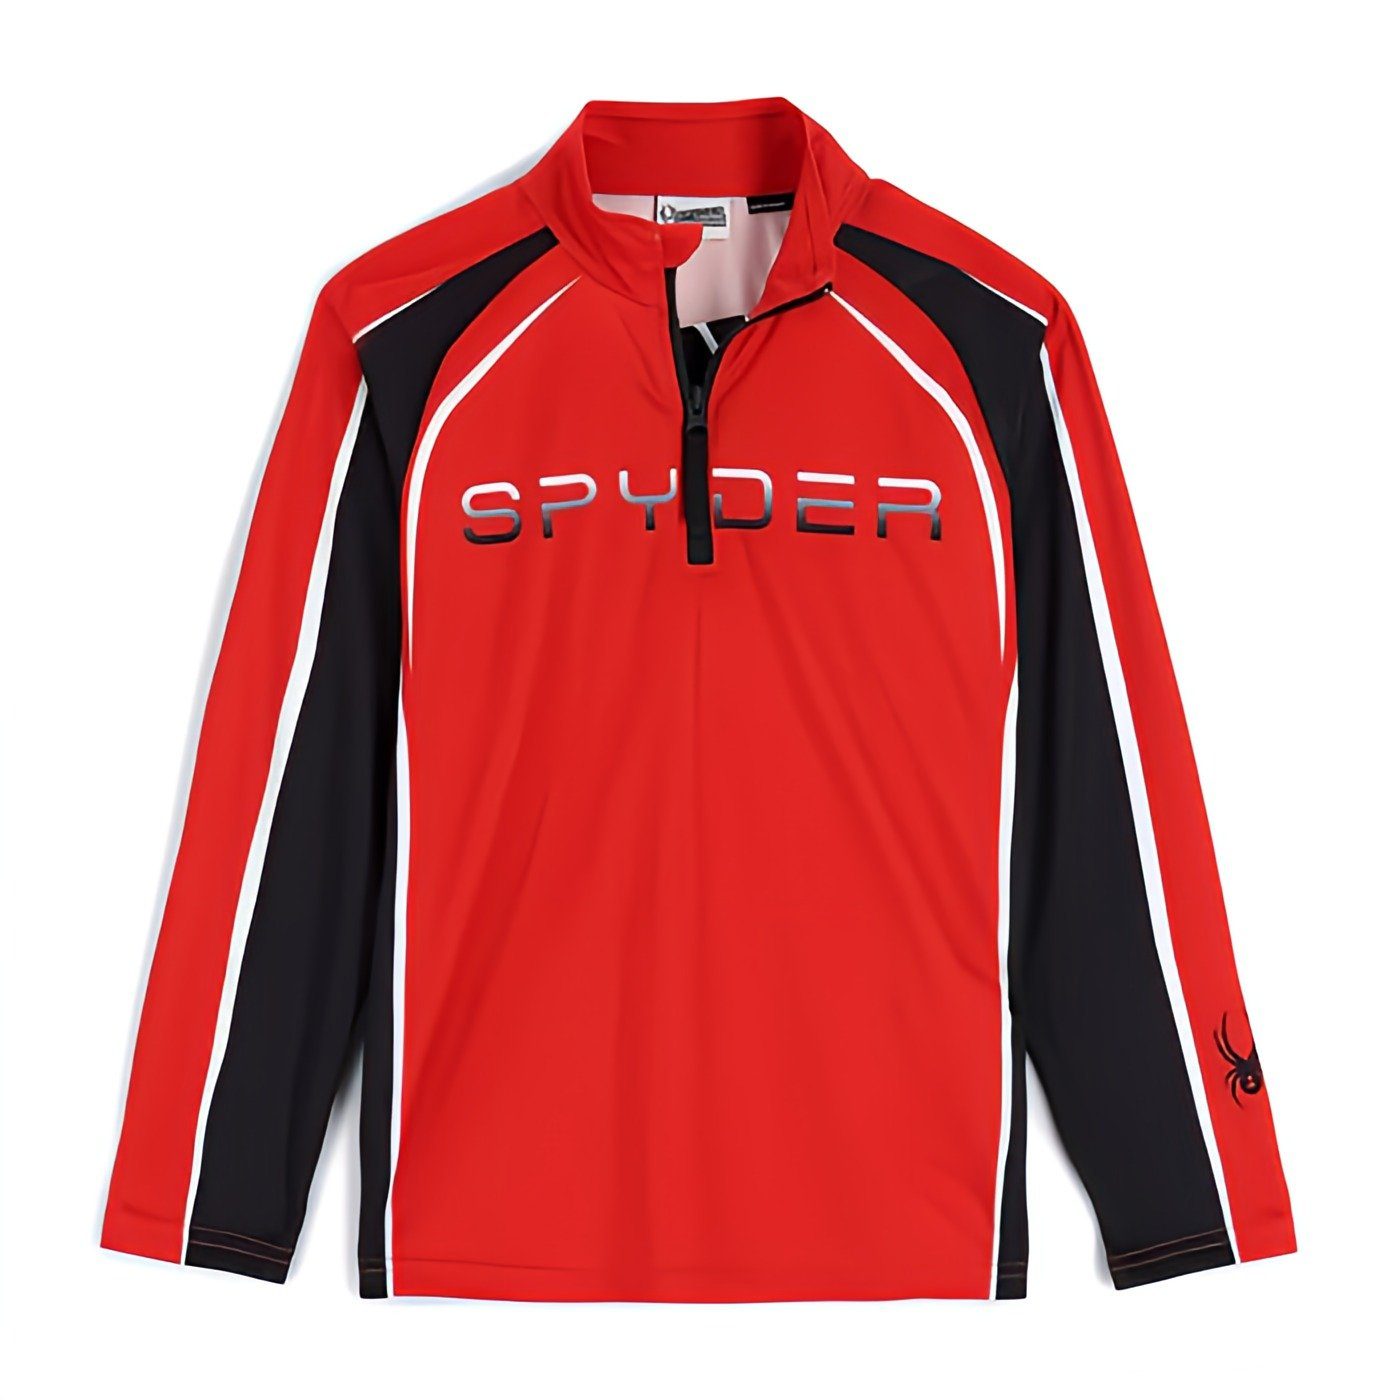 Spyder Fleeceshirt Downhill Skifleece für Kinder rot | Outdoorshirts